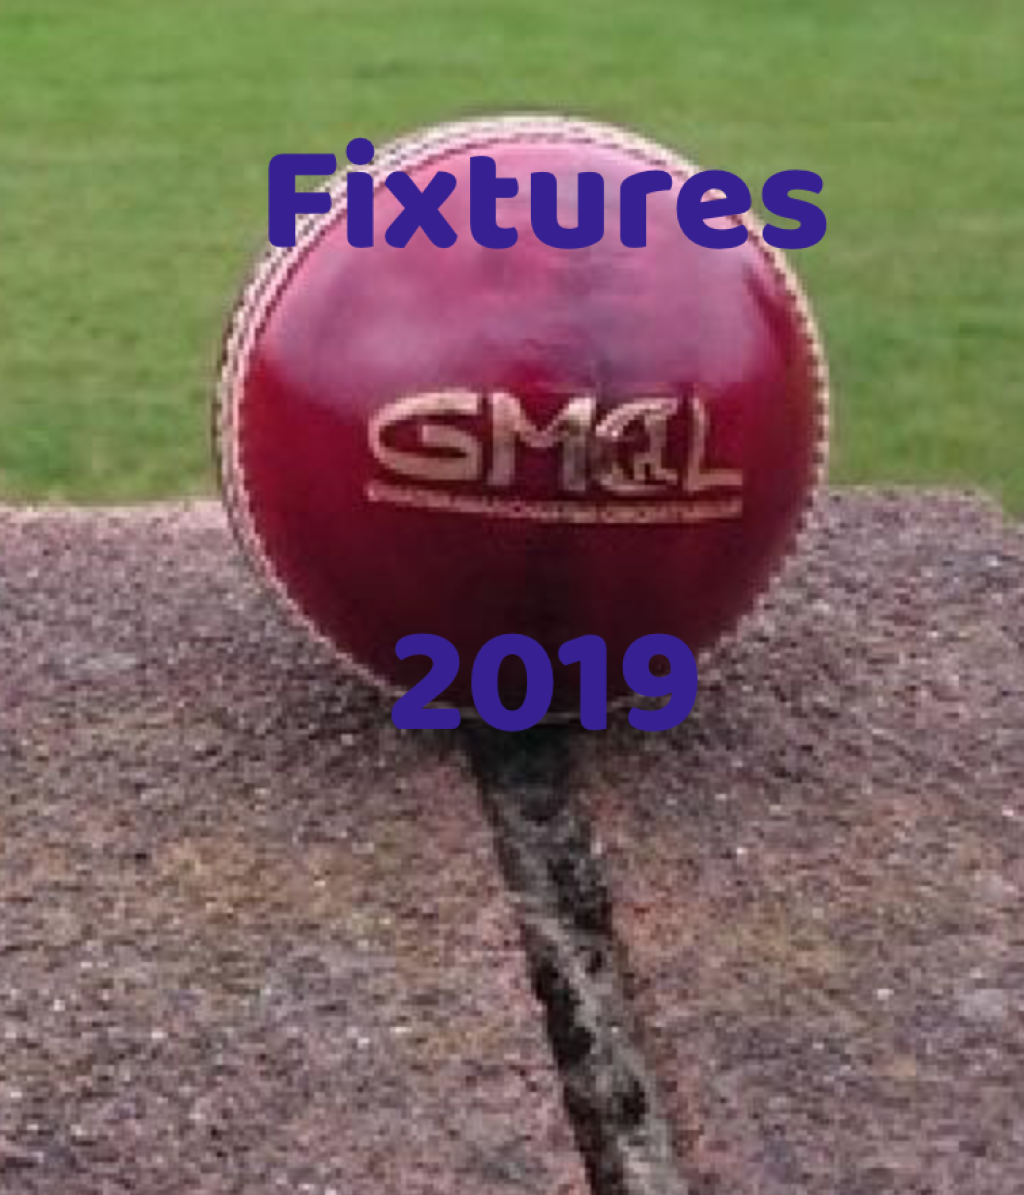 Fixtures 2019